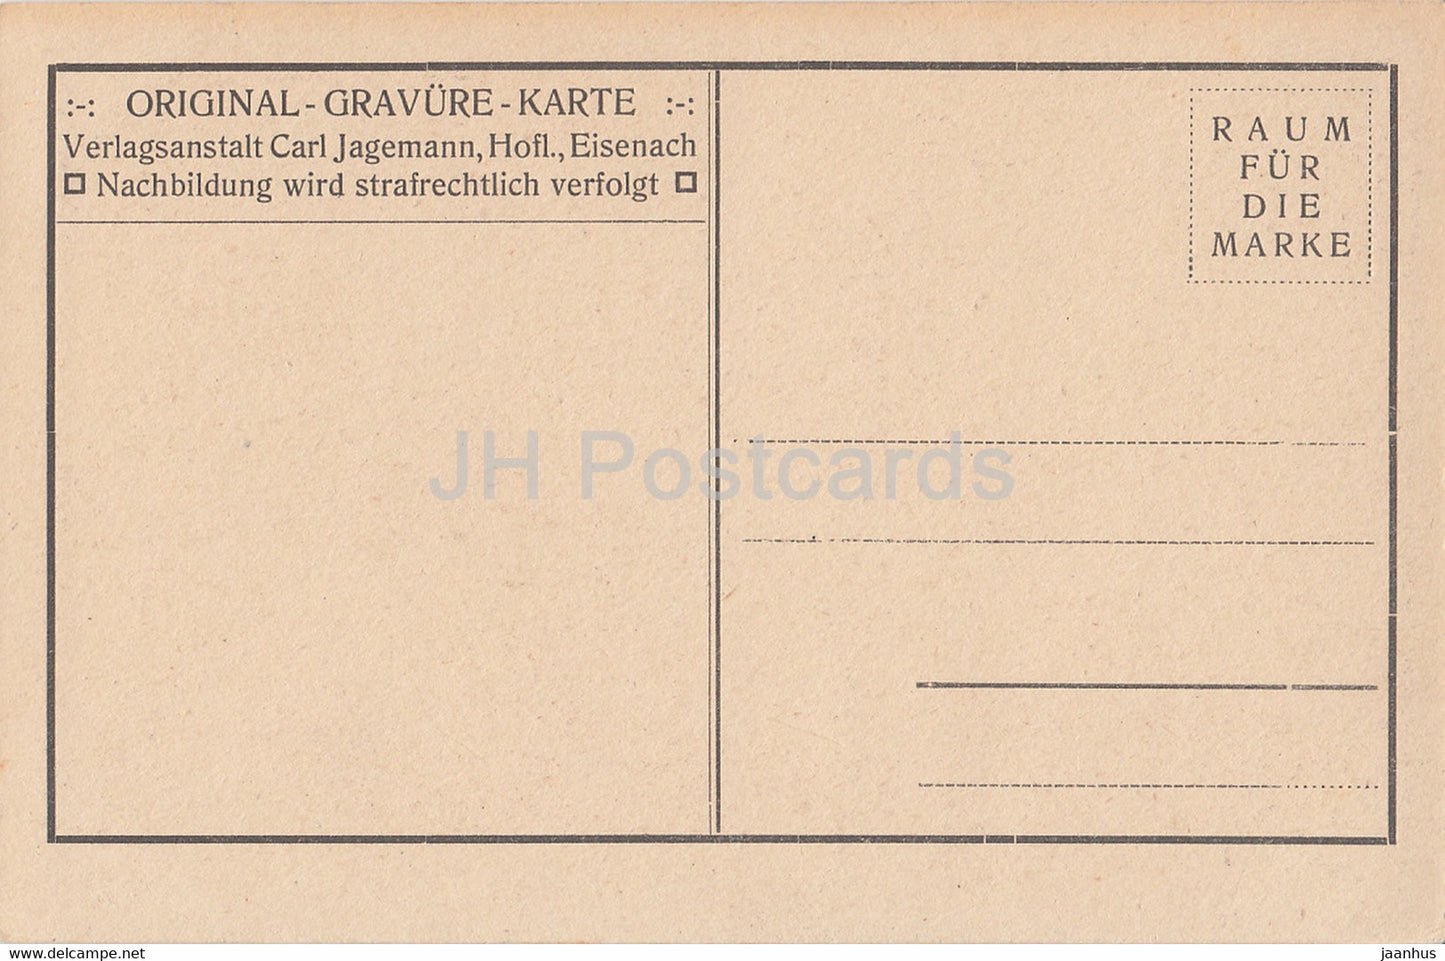 Die Altensteiner Hohle - cave - old postcard - Germany - unused